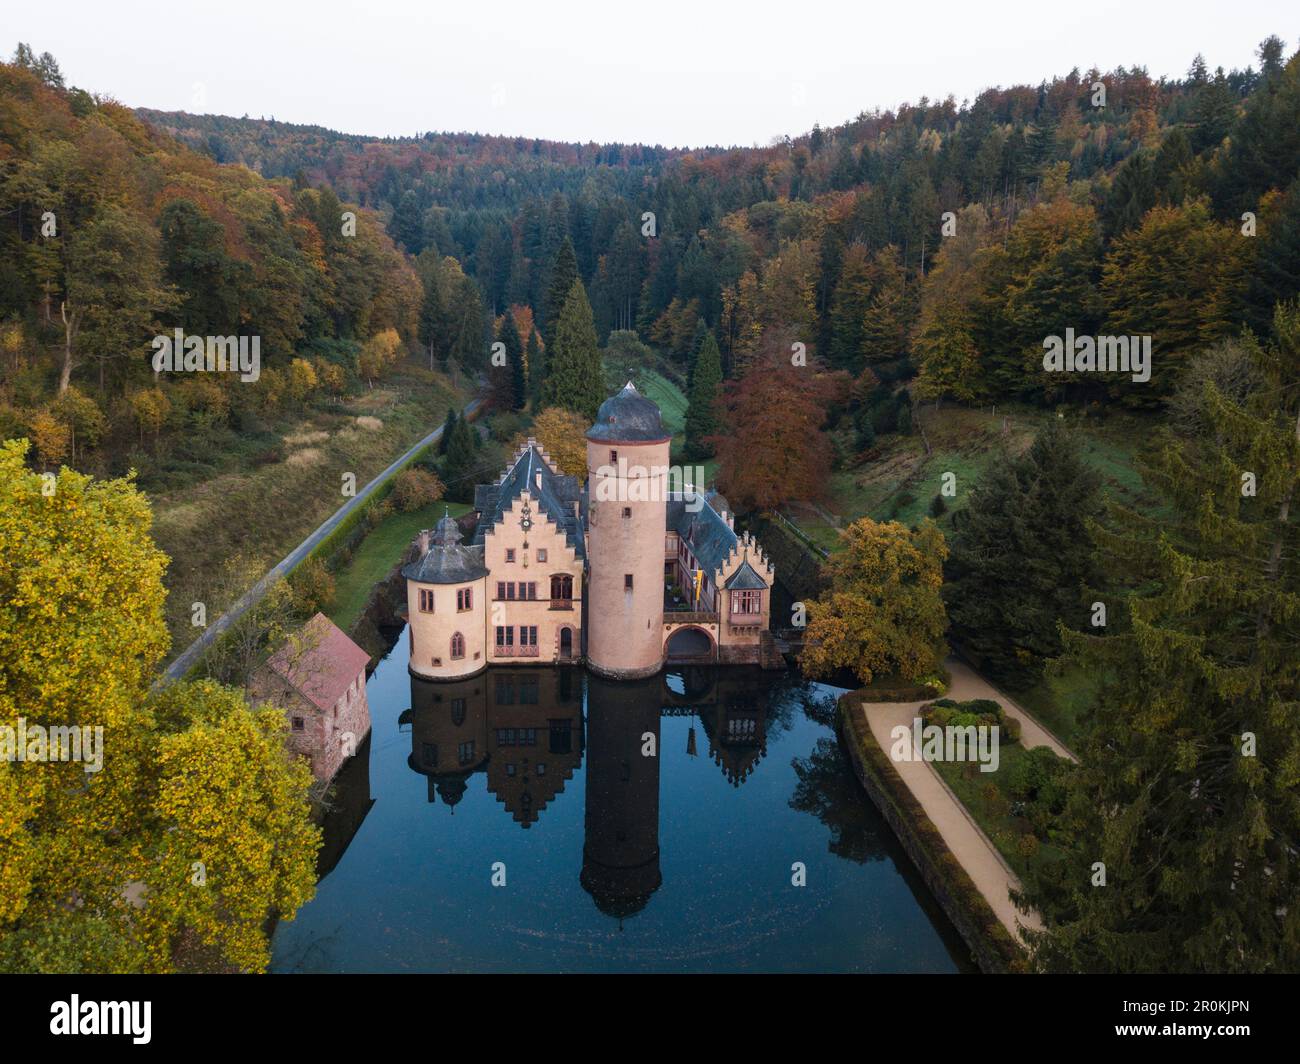 Aerial of Schloss Mespelbrunn castle with reflection in moat, Mespelbrunn, Räuberland, Spessart-Mainland, Bavaria, Germany Stock Photo